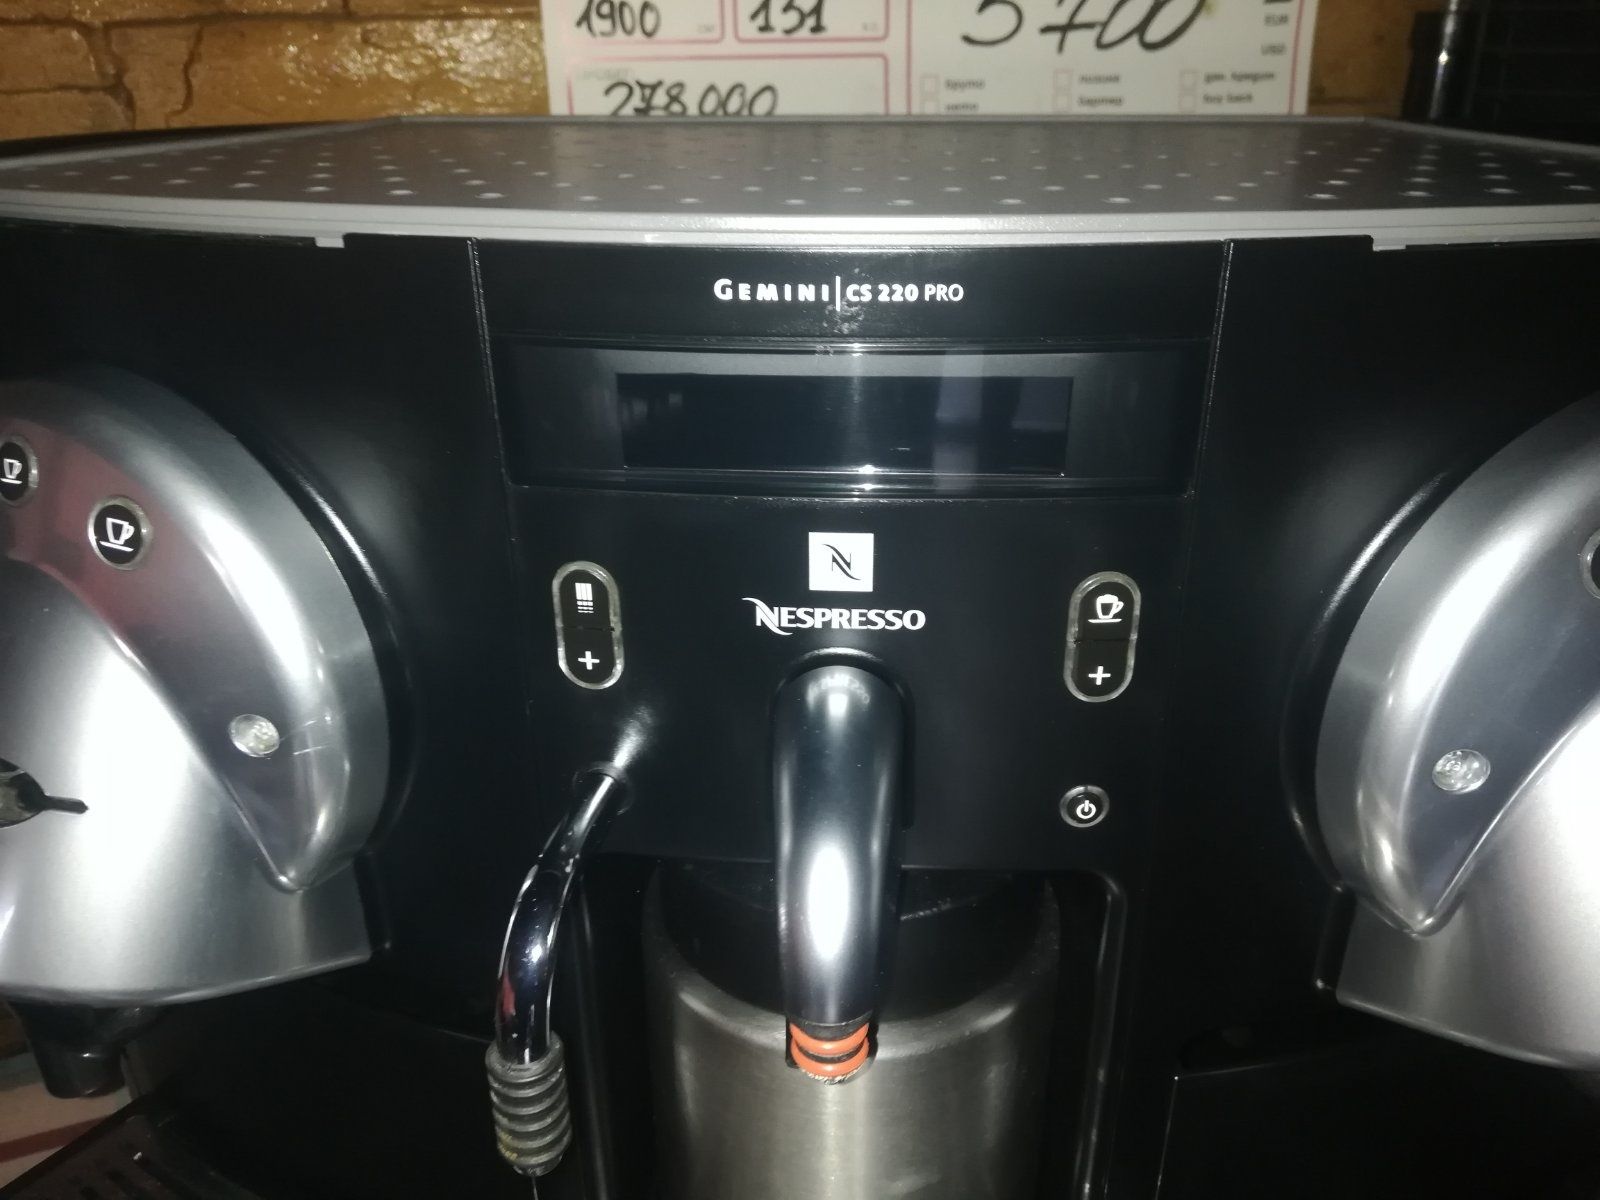 Nespresso Gemini cs220 Pro